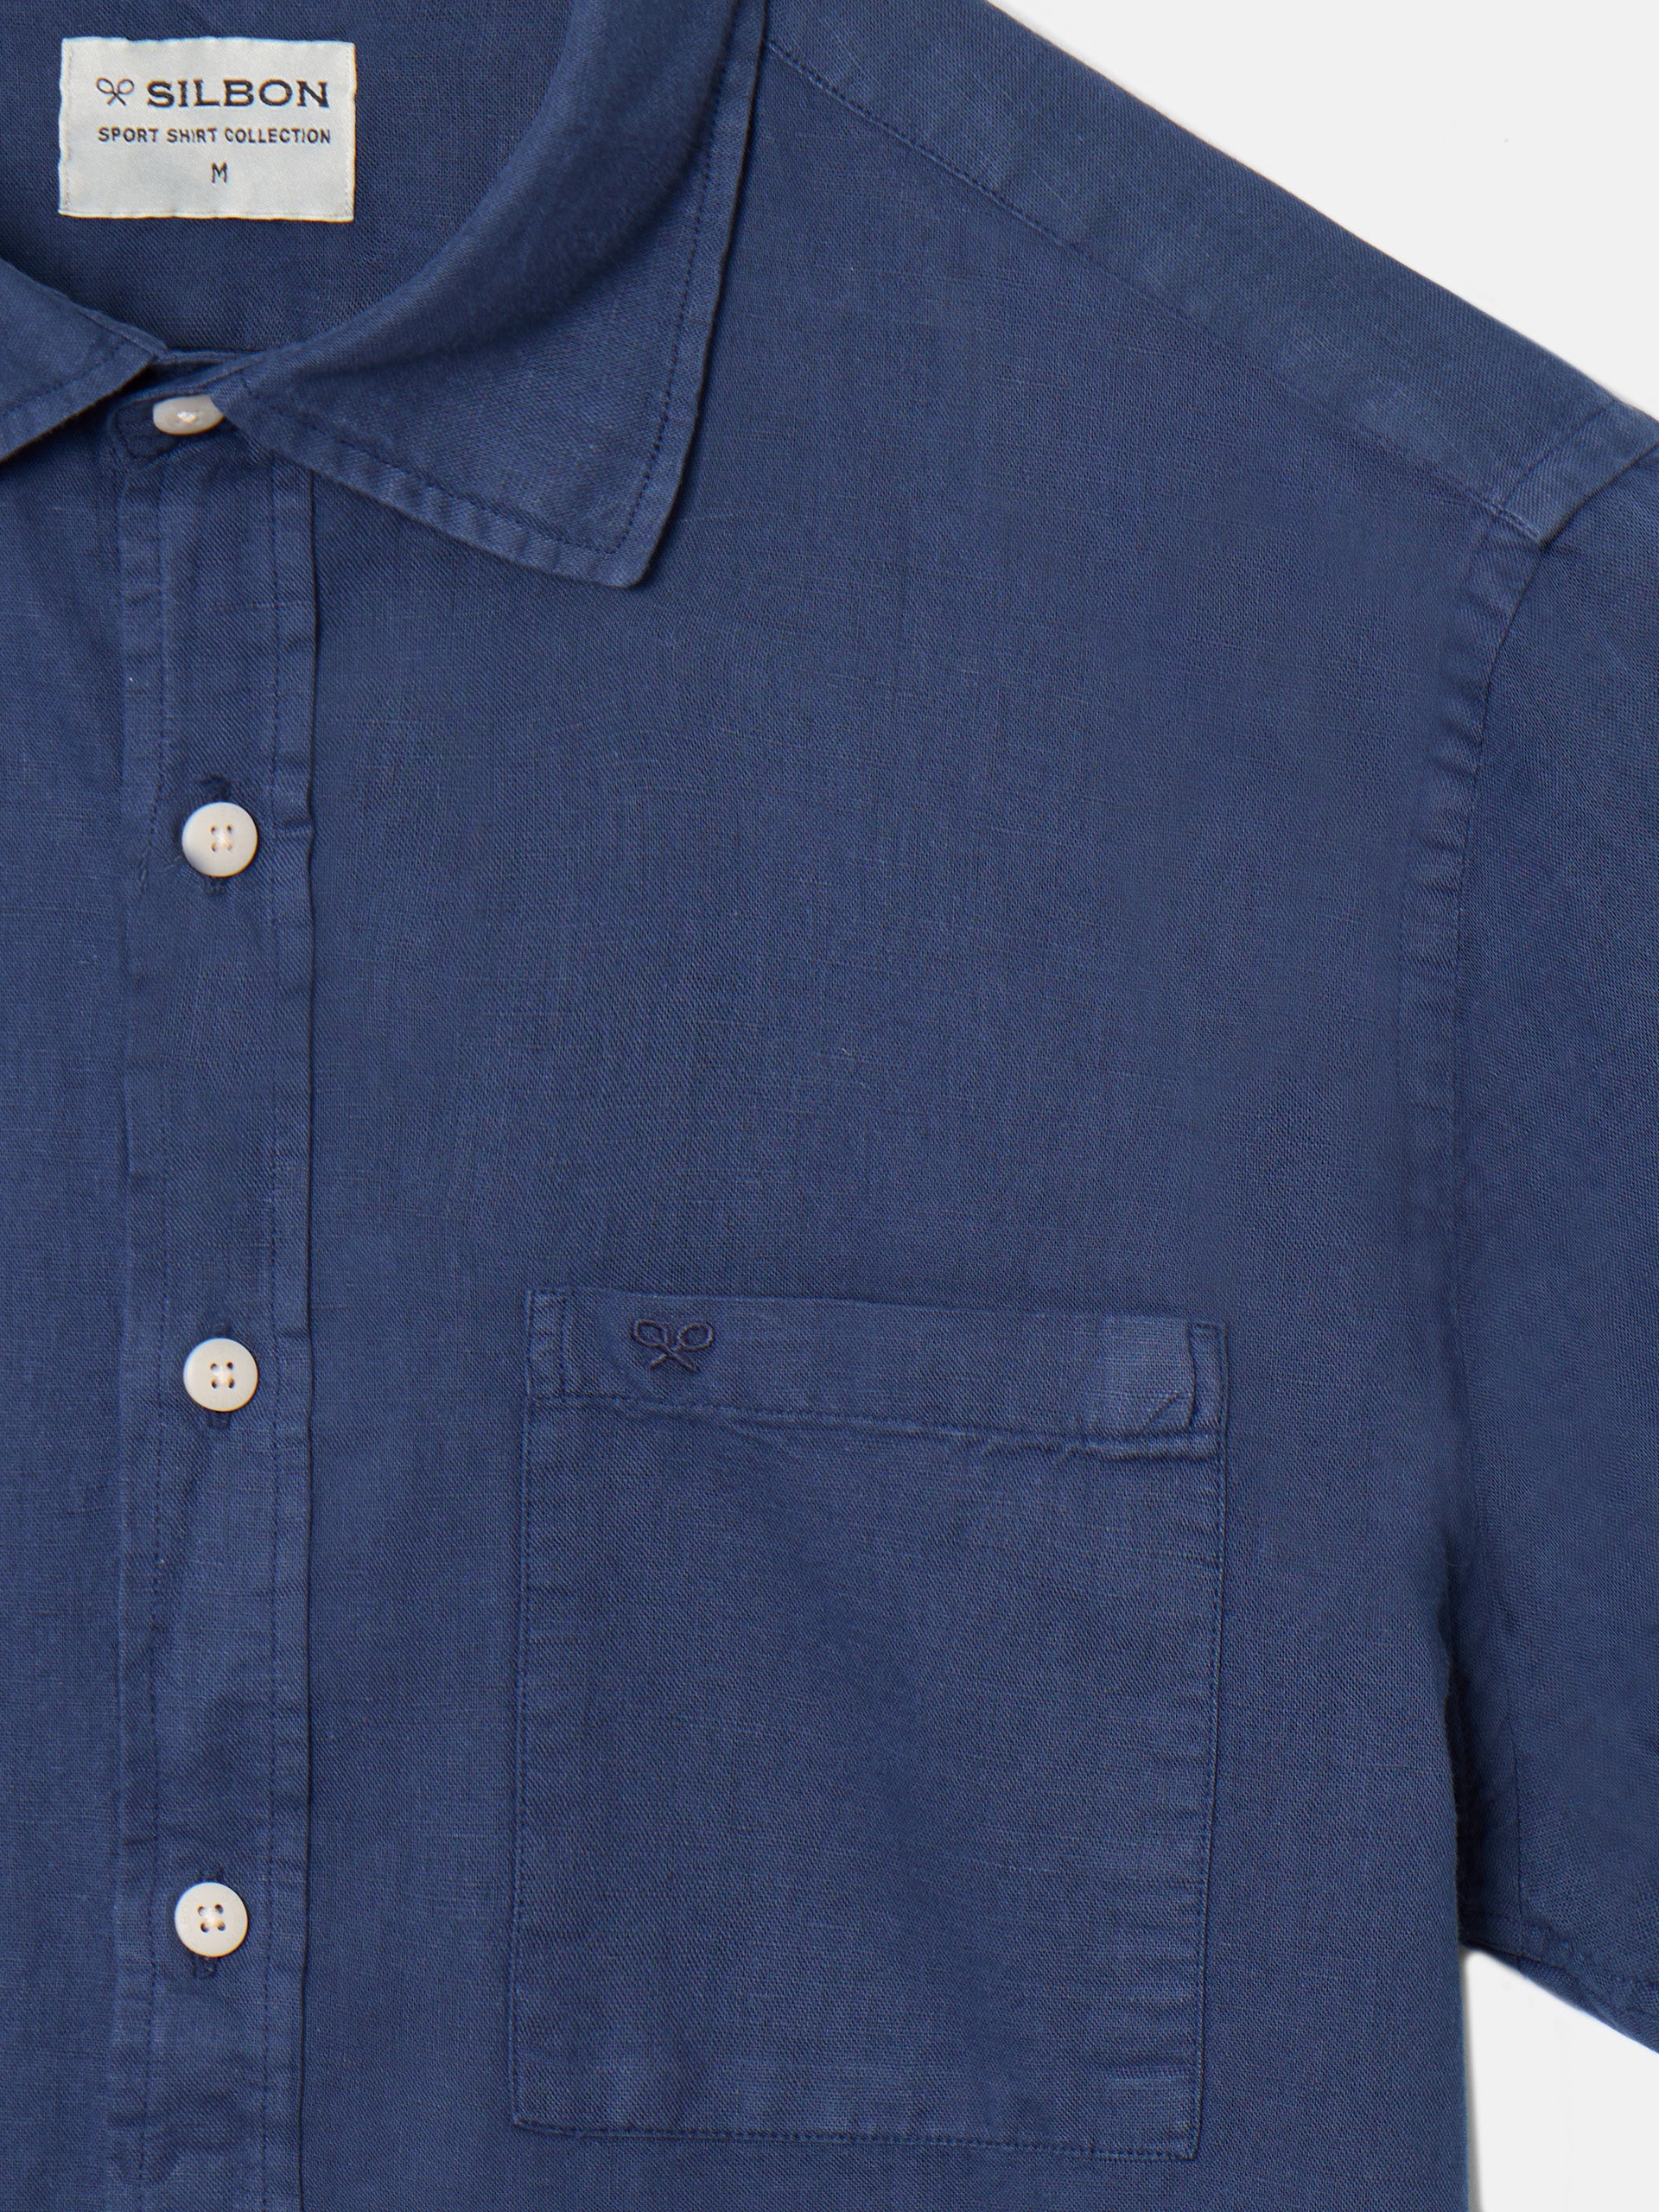 Camisa sport lino manga corta azul marino